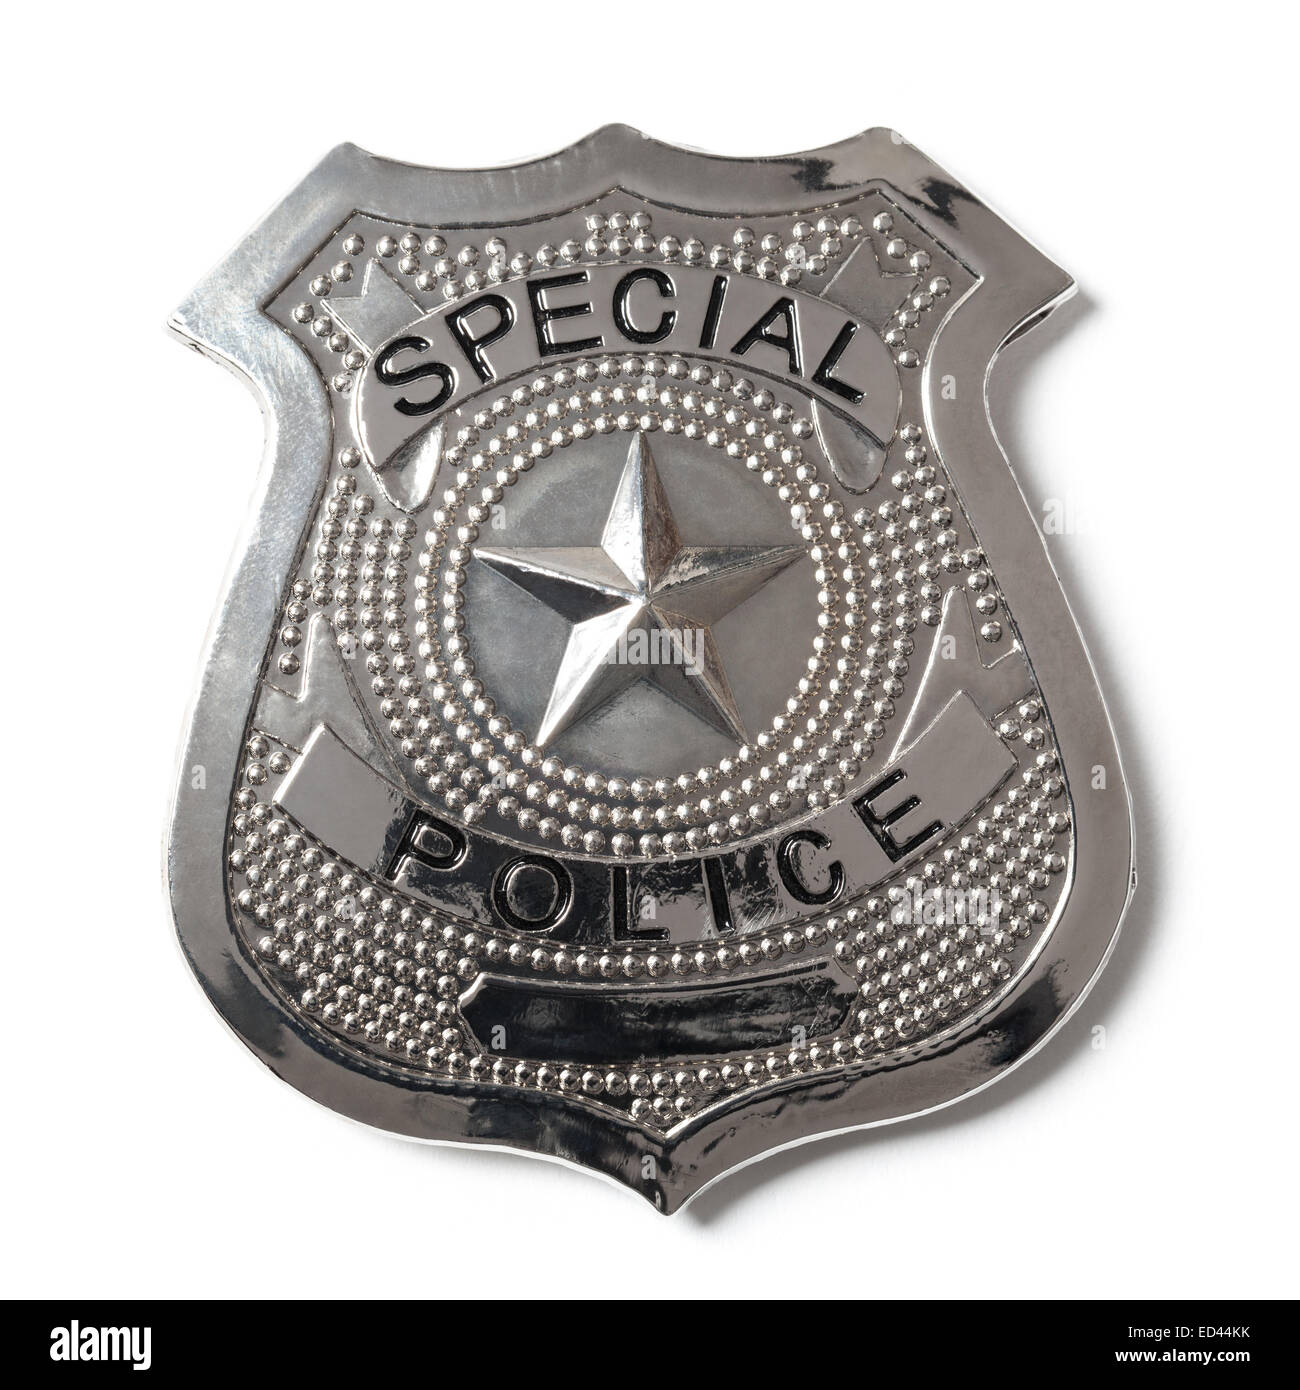 Smiffy's-34040 Police Badge Placa de policía, en Cartera, Color Plata, No  es Applicable (34040)